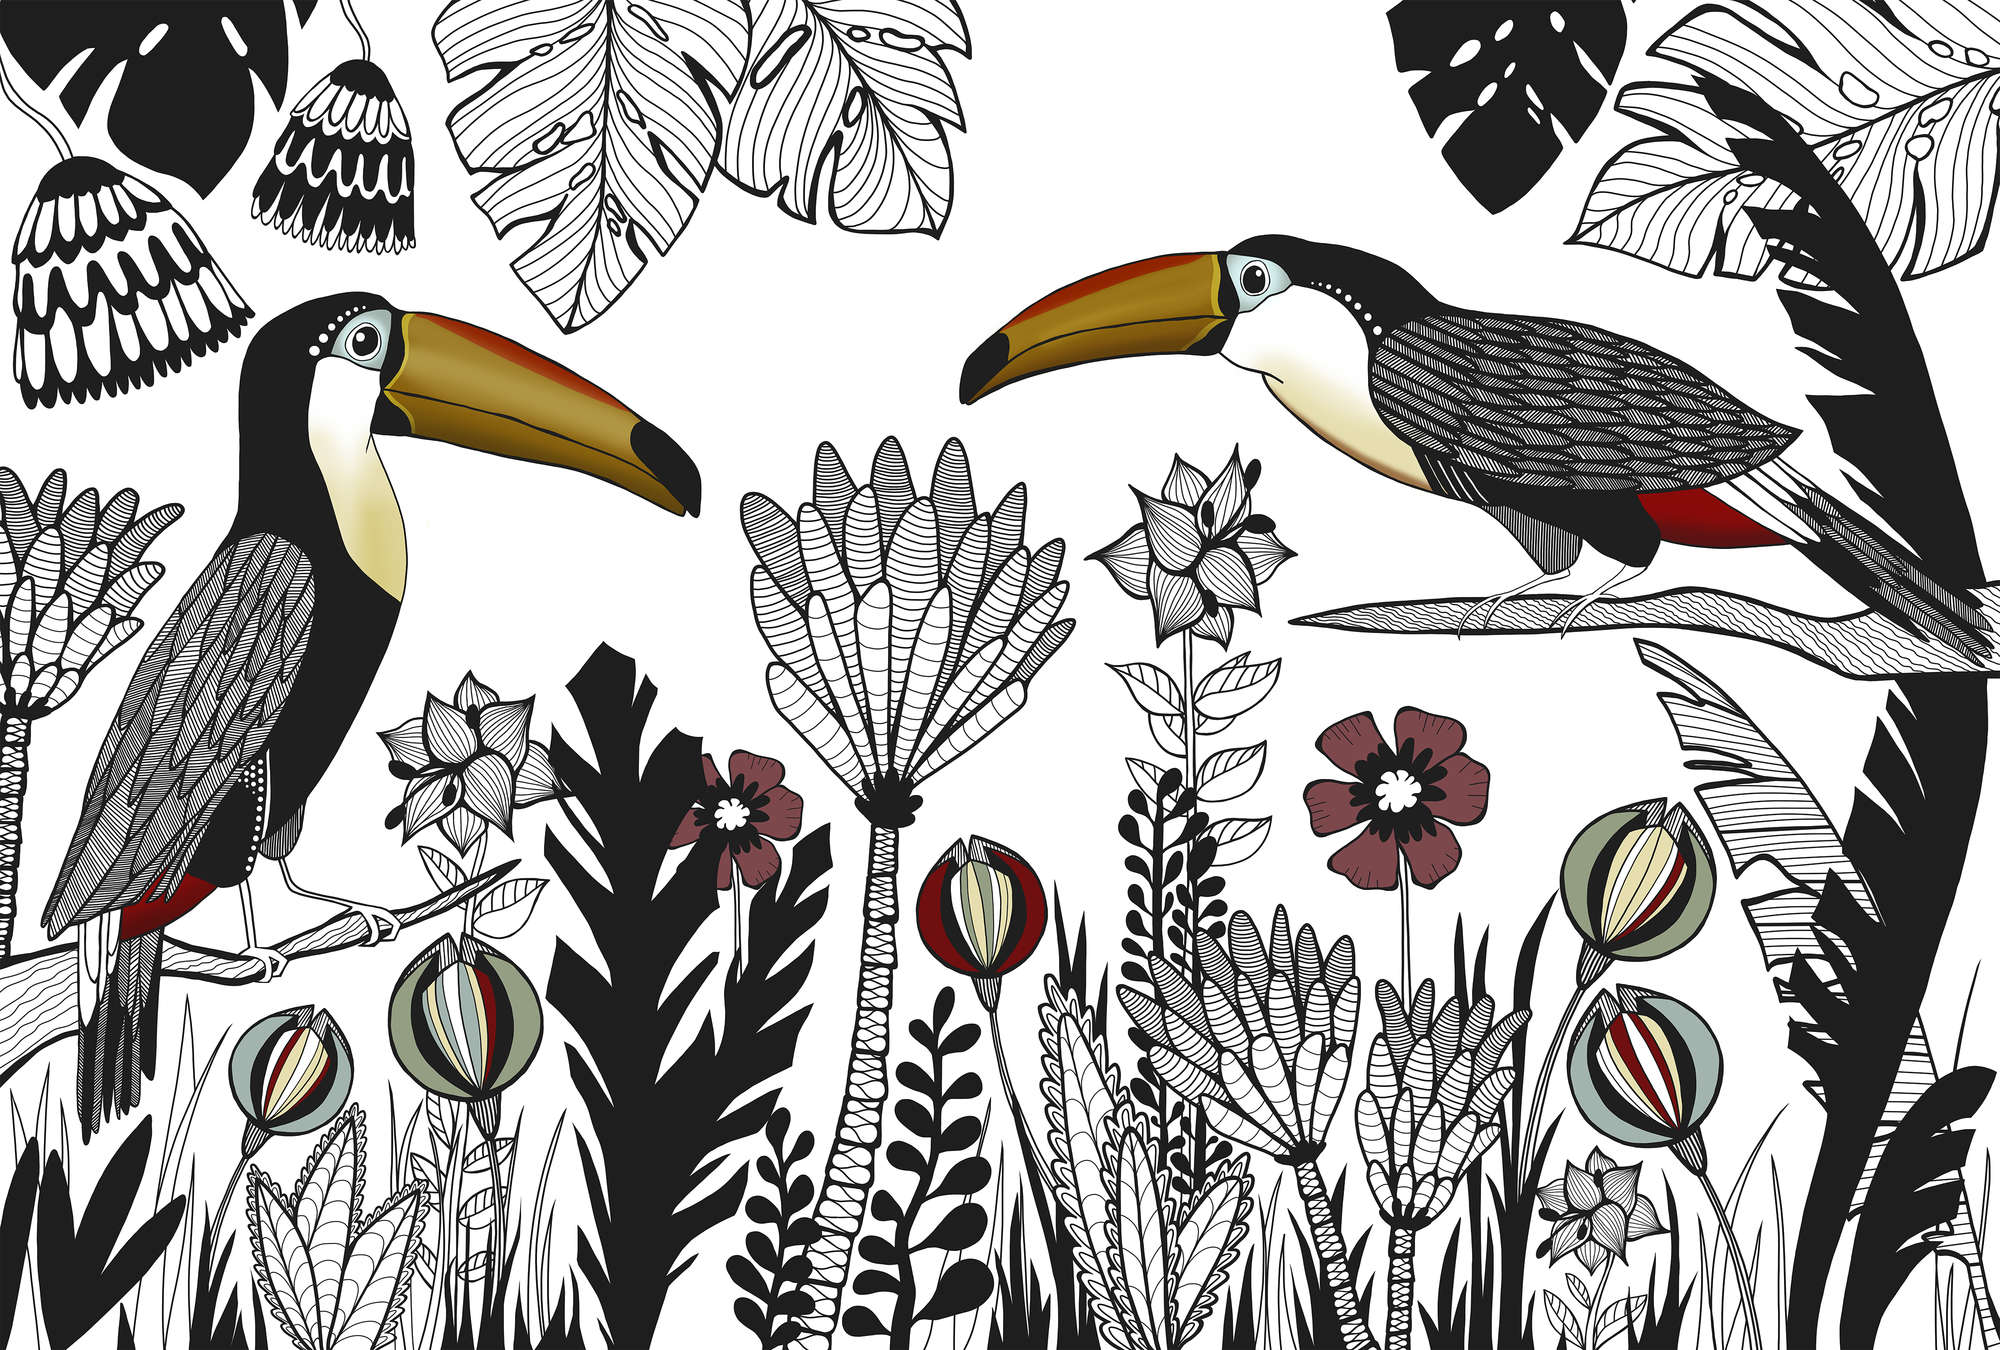             Papier peint oiseau Toucan avec motif tropical de style dessin animé
        